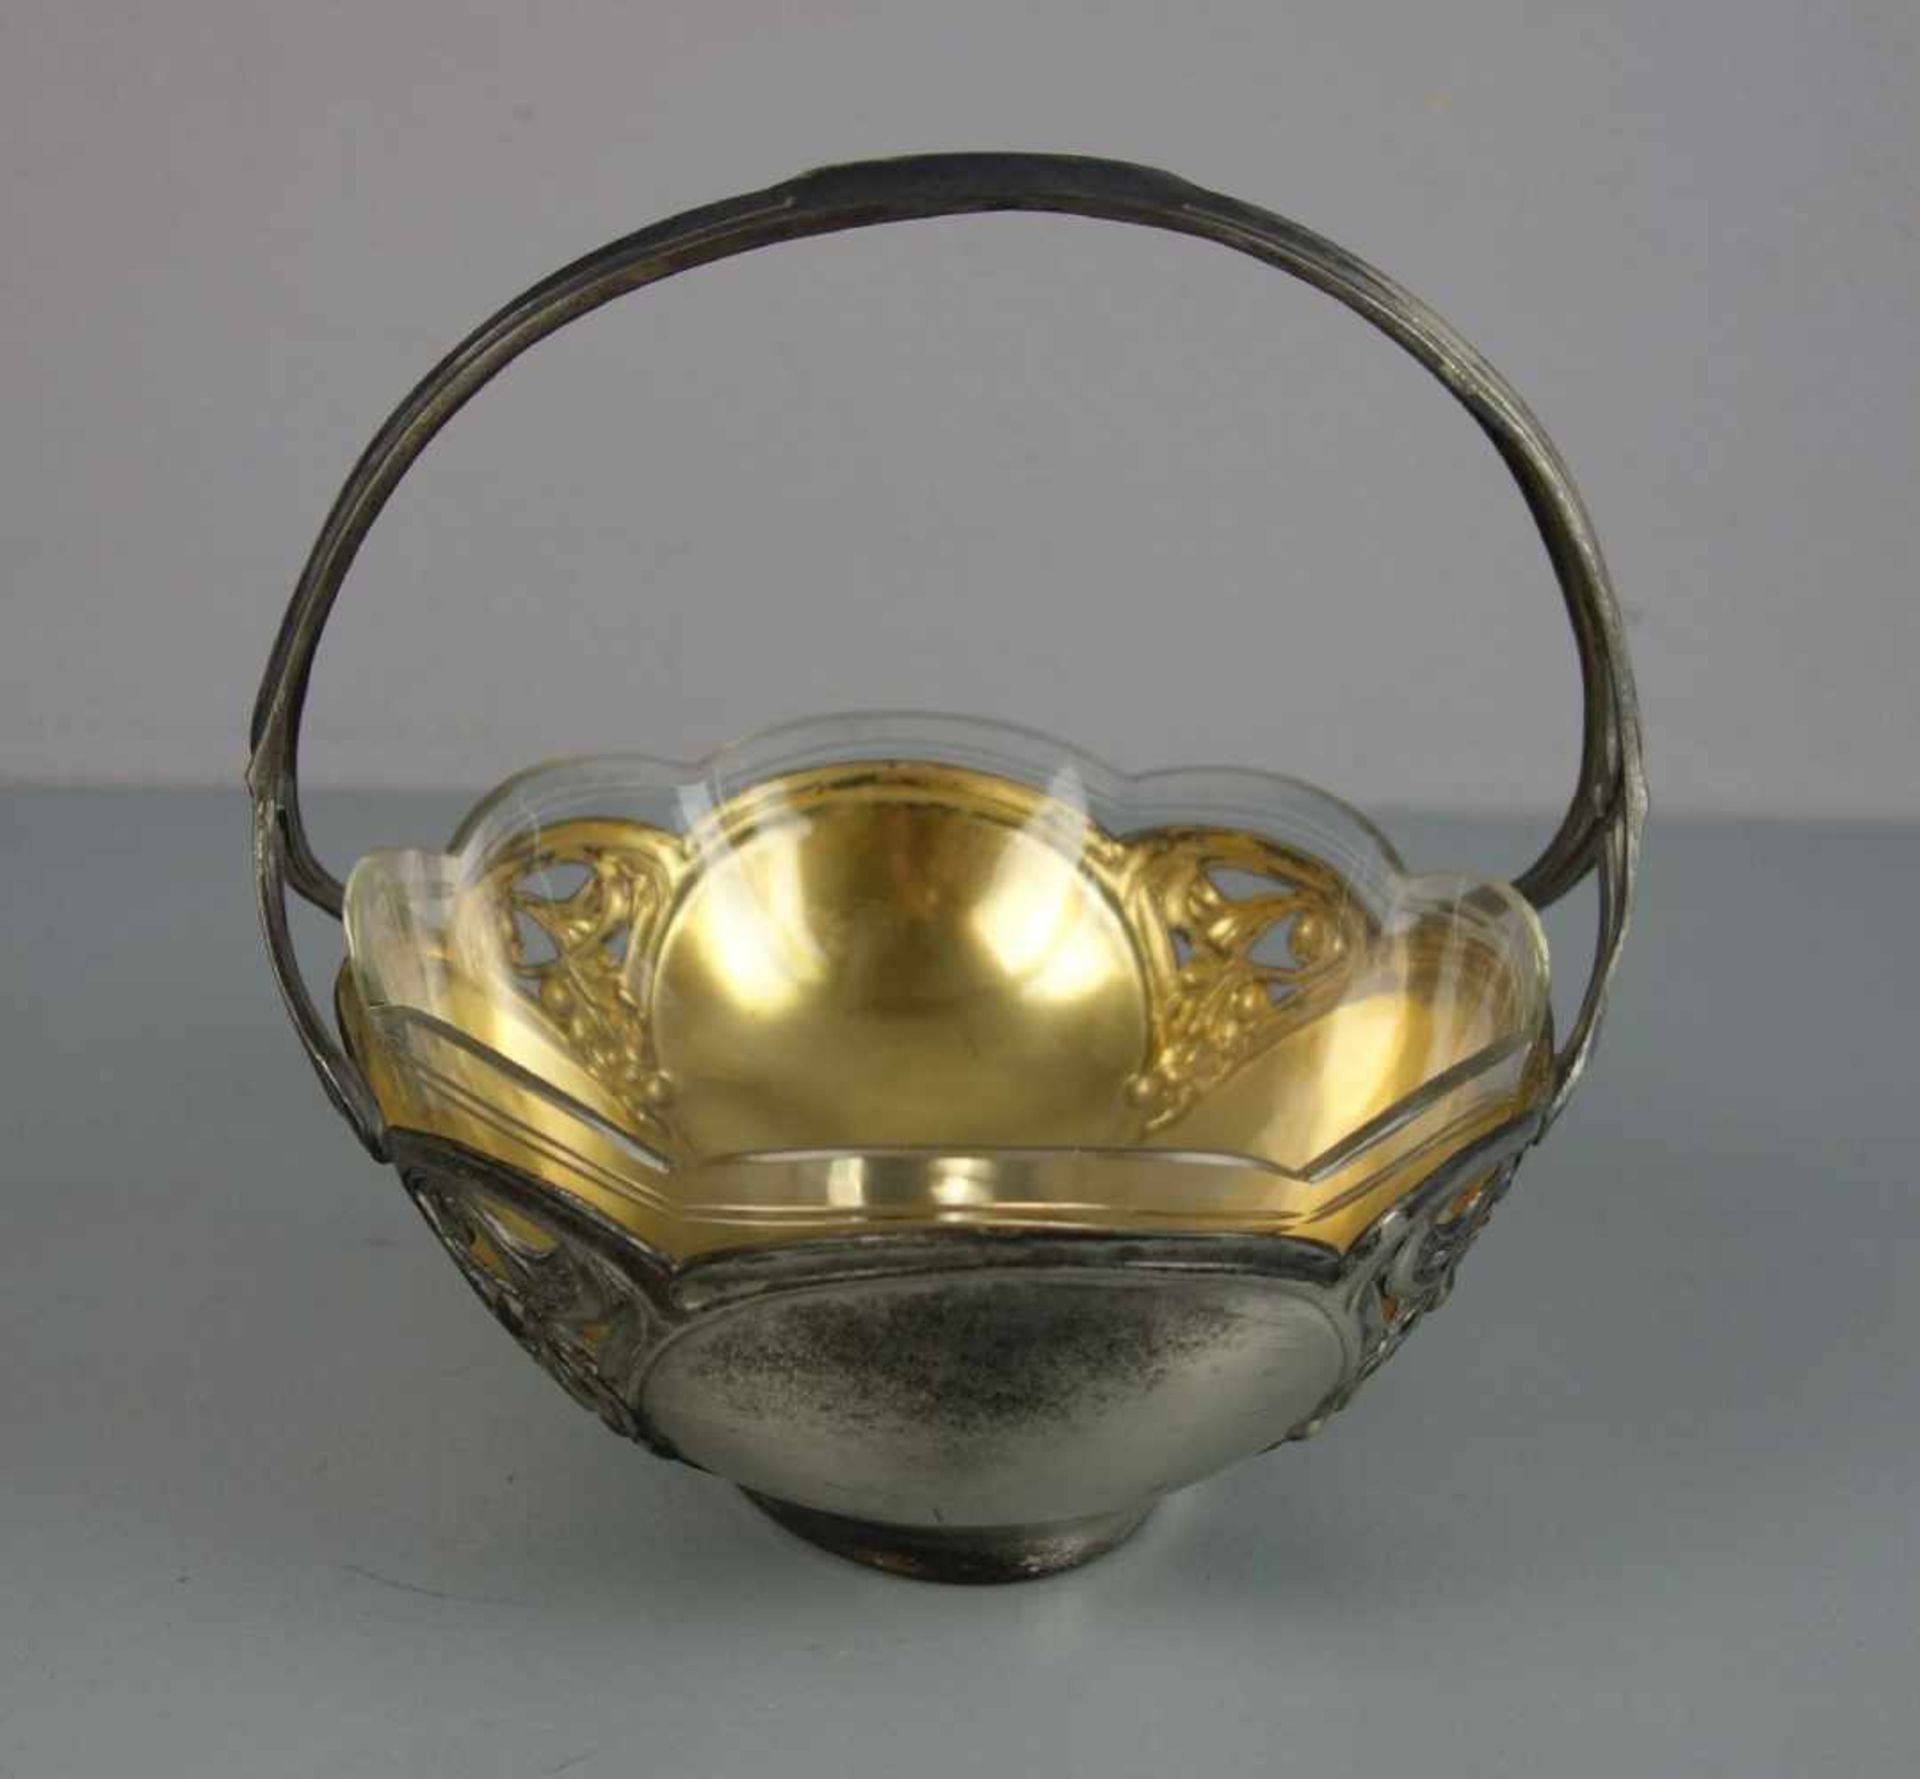 JUGENDSTIL HENKELSCHALE / OBSTSCHALE / art nouveau bowl, um 1900, Metall und Glas, ungemarkt. - Bild 4 aus 4